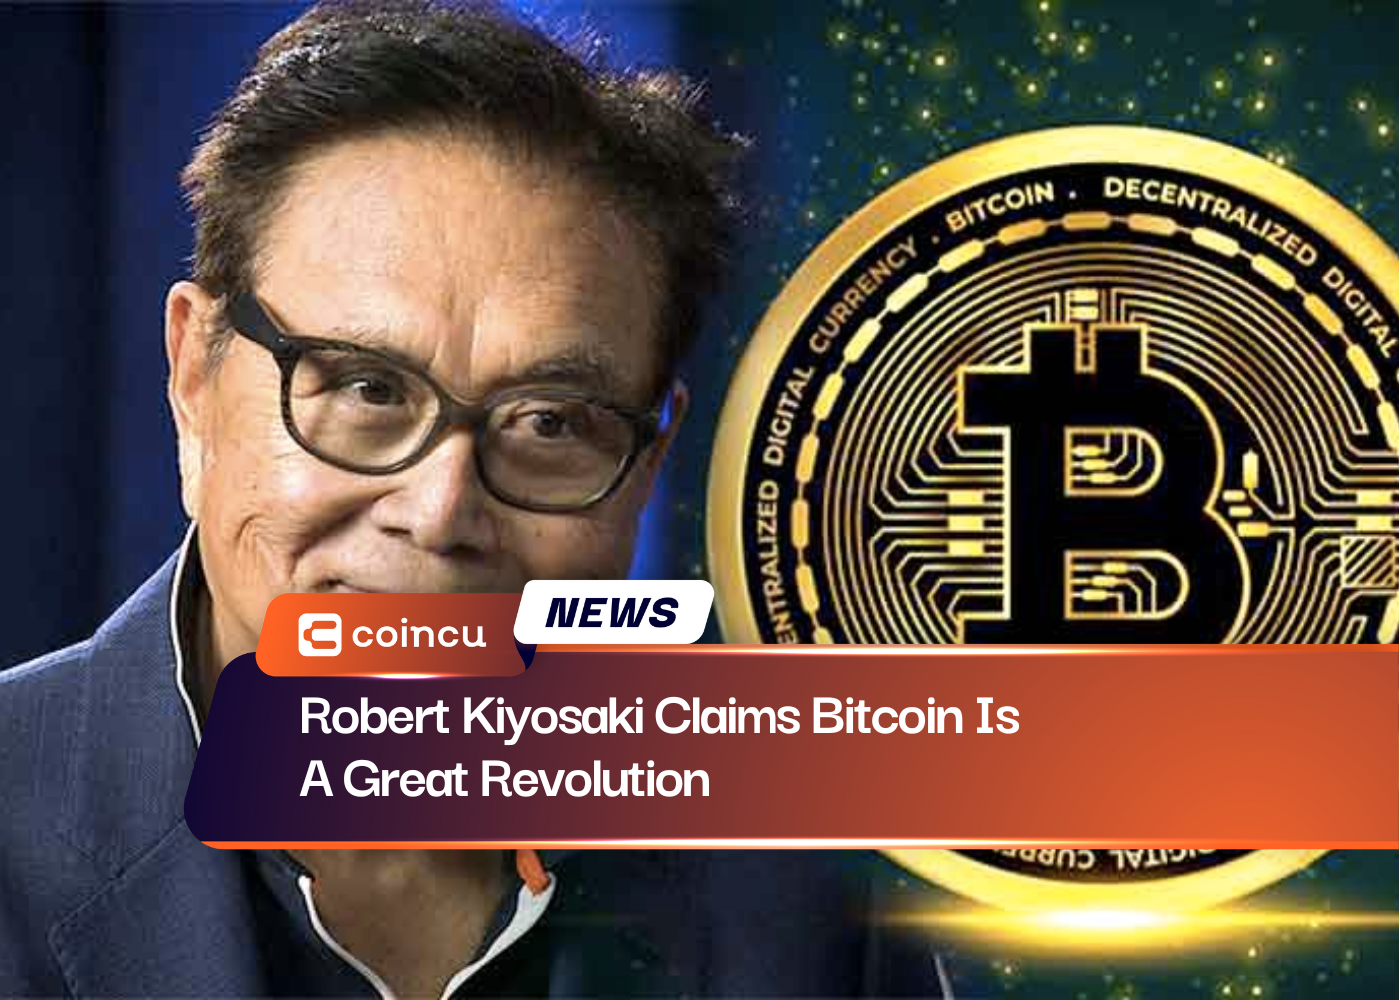 Robert Kiyosaki afirma que o Bitcoin é uma grande revolução